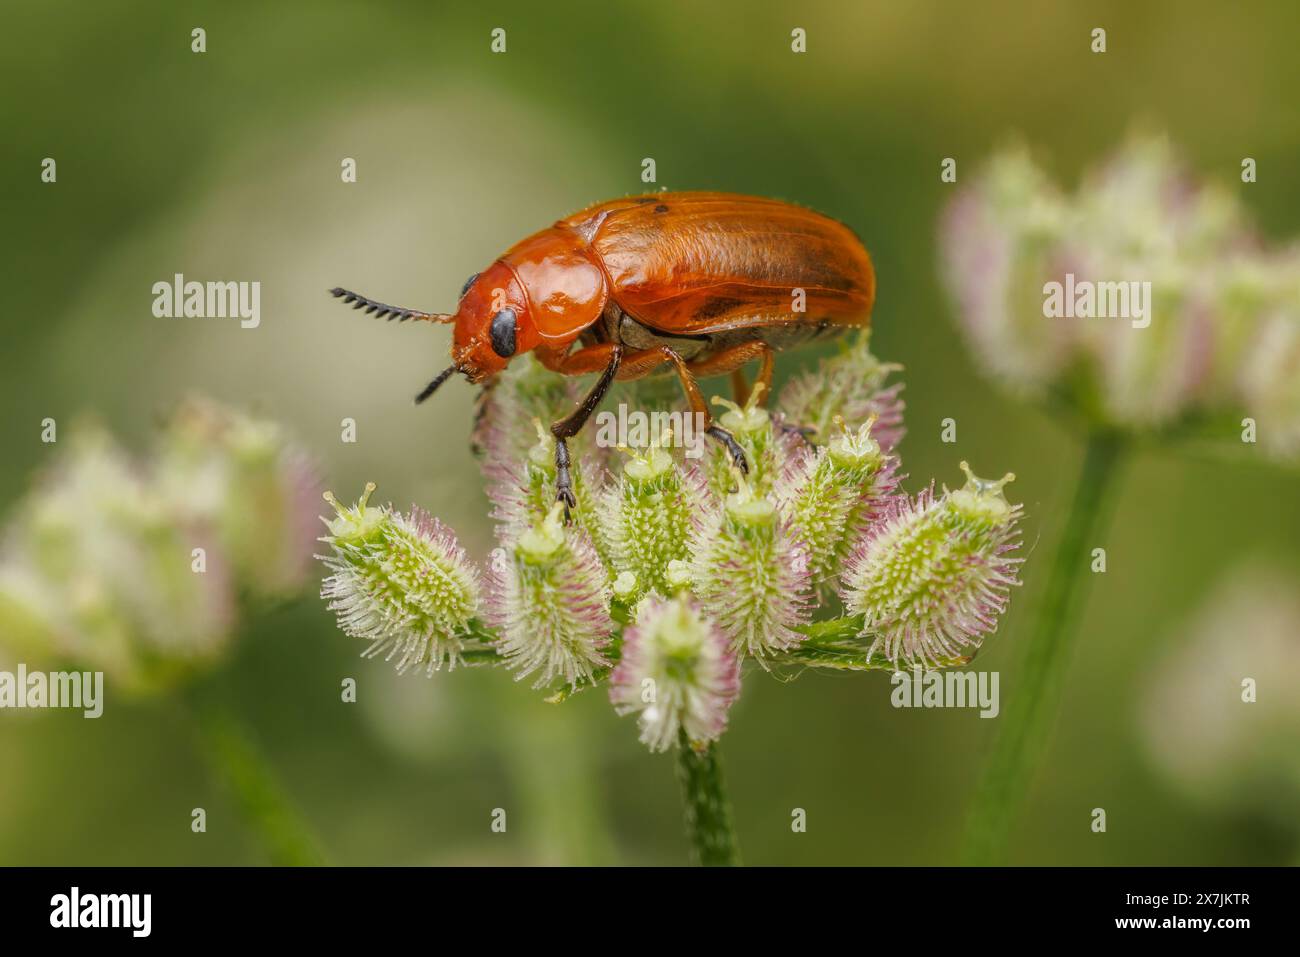 Case-bearing Leaf Beetle (Anomoea flavokansiensis) Stock Photo